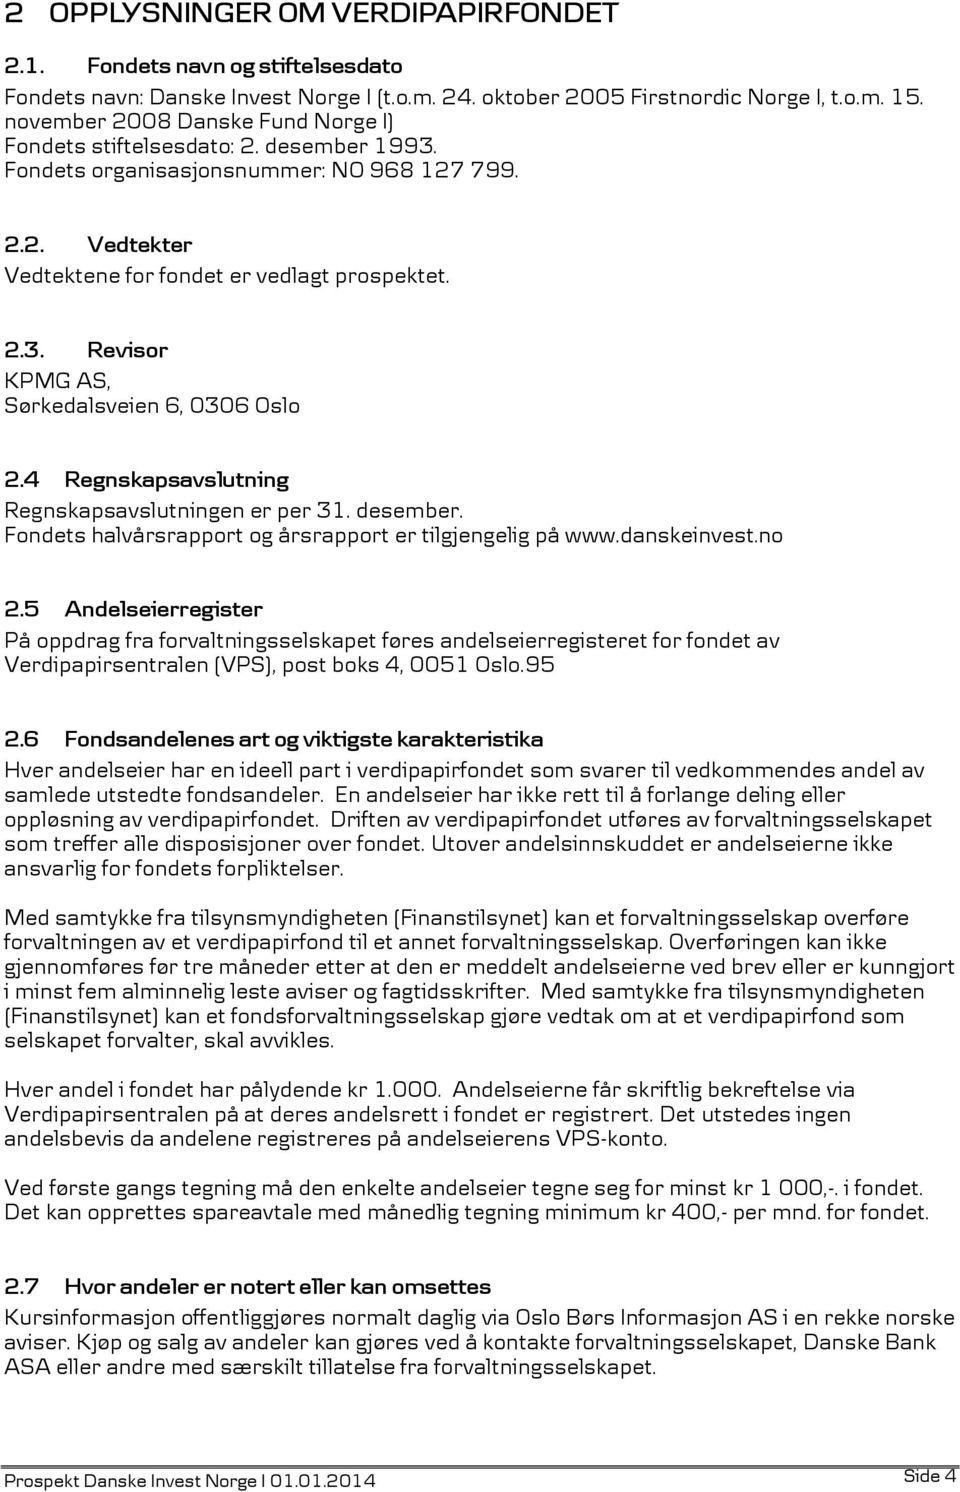 4 Regnskapsavslutning Regnskapsavslutningen er per 31. desember. Fondets halvårsrapport og årsrapport er tilgjengelig på www.danskeinvest.no 2.